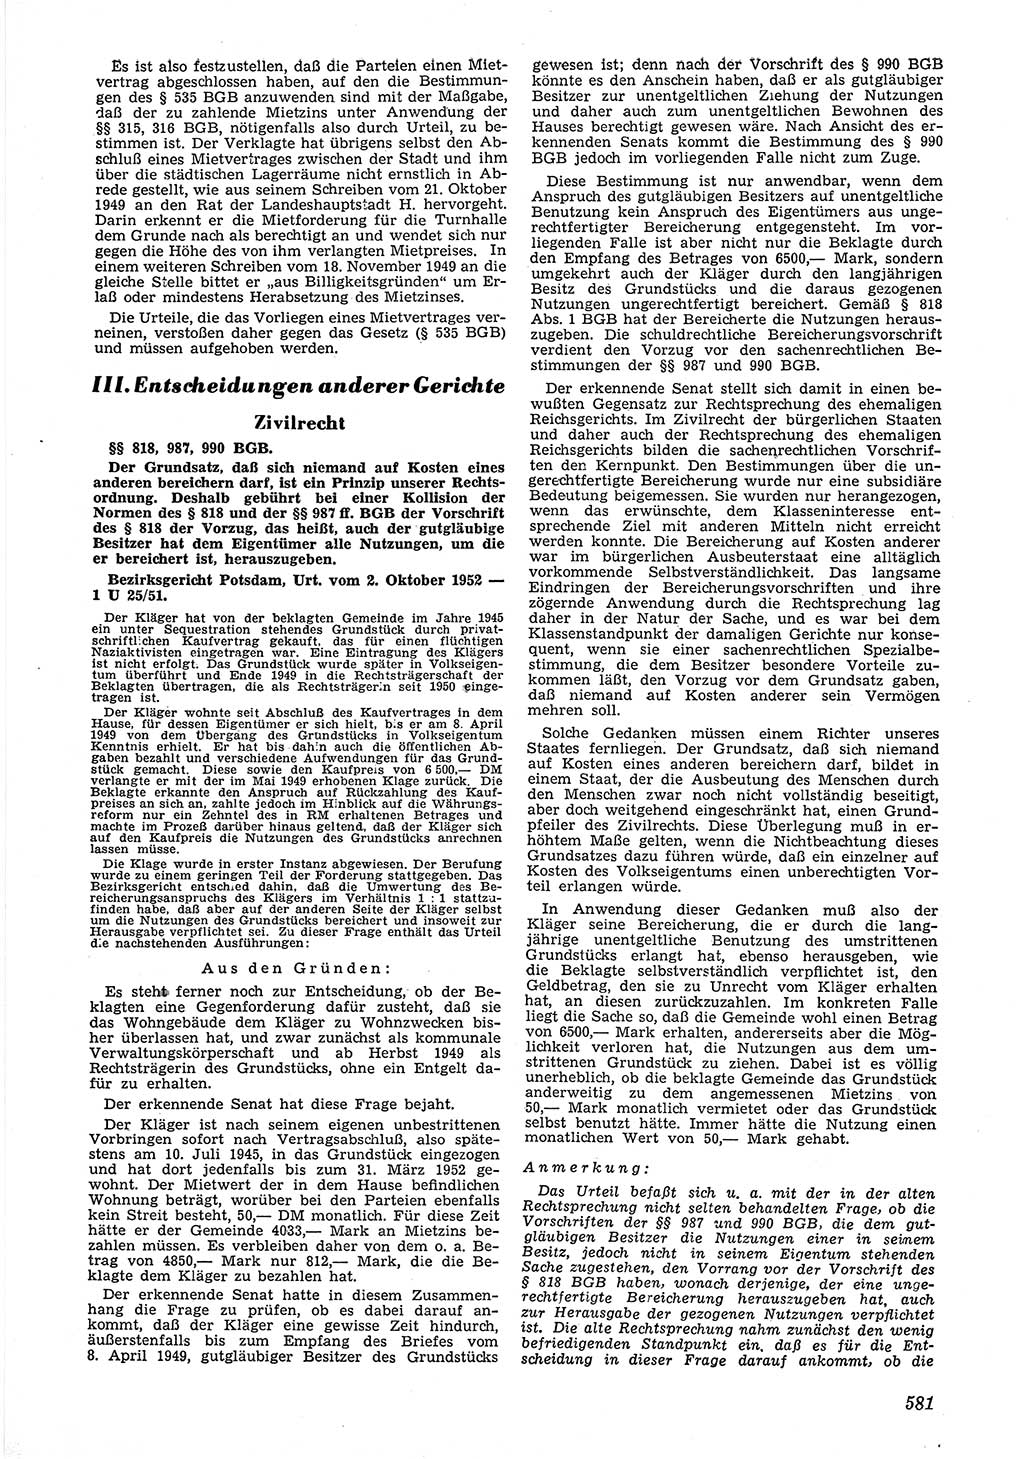 Neue Justiz (NJ), Zeitschrift für Recht und Rechtswissenschaft [Deutsche Demokratische Republik (DDR)], 6. Jahrgang 1952, Seite 581 (NJ DDR 1952, S. 581)